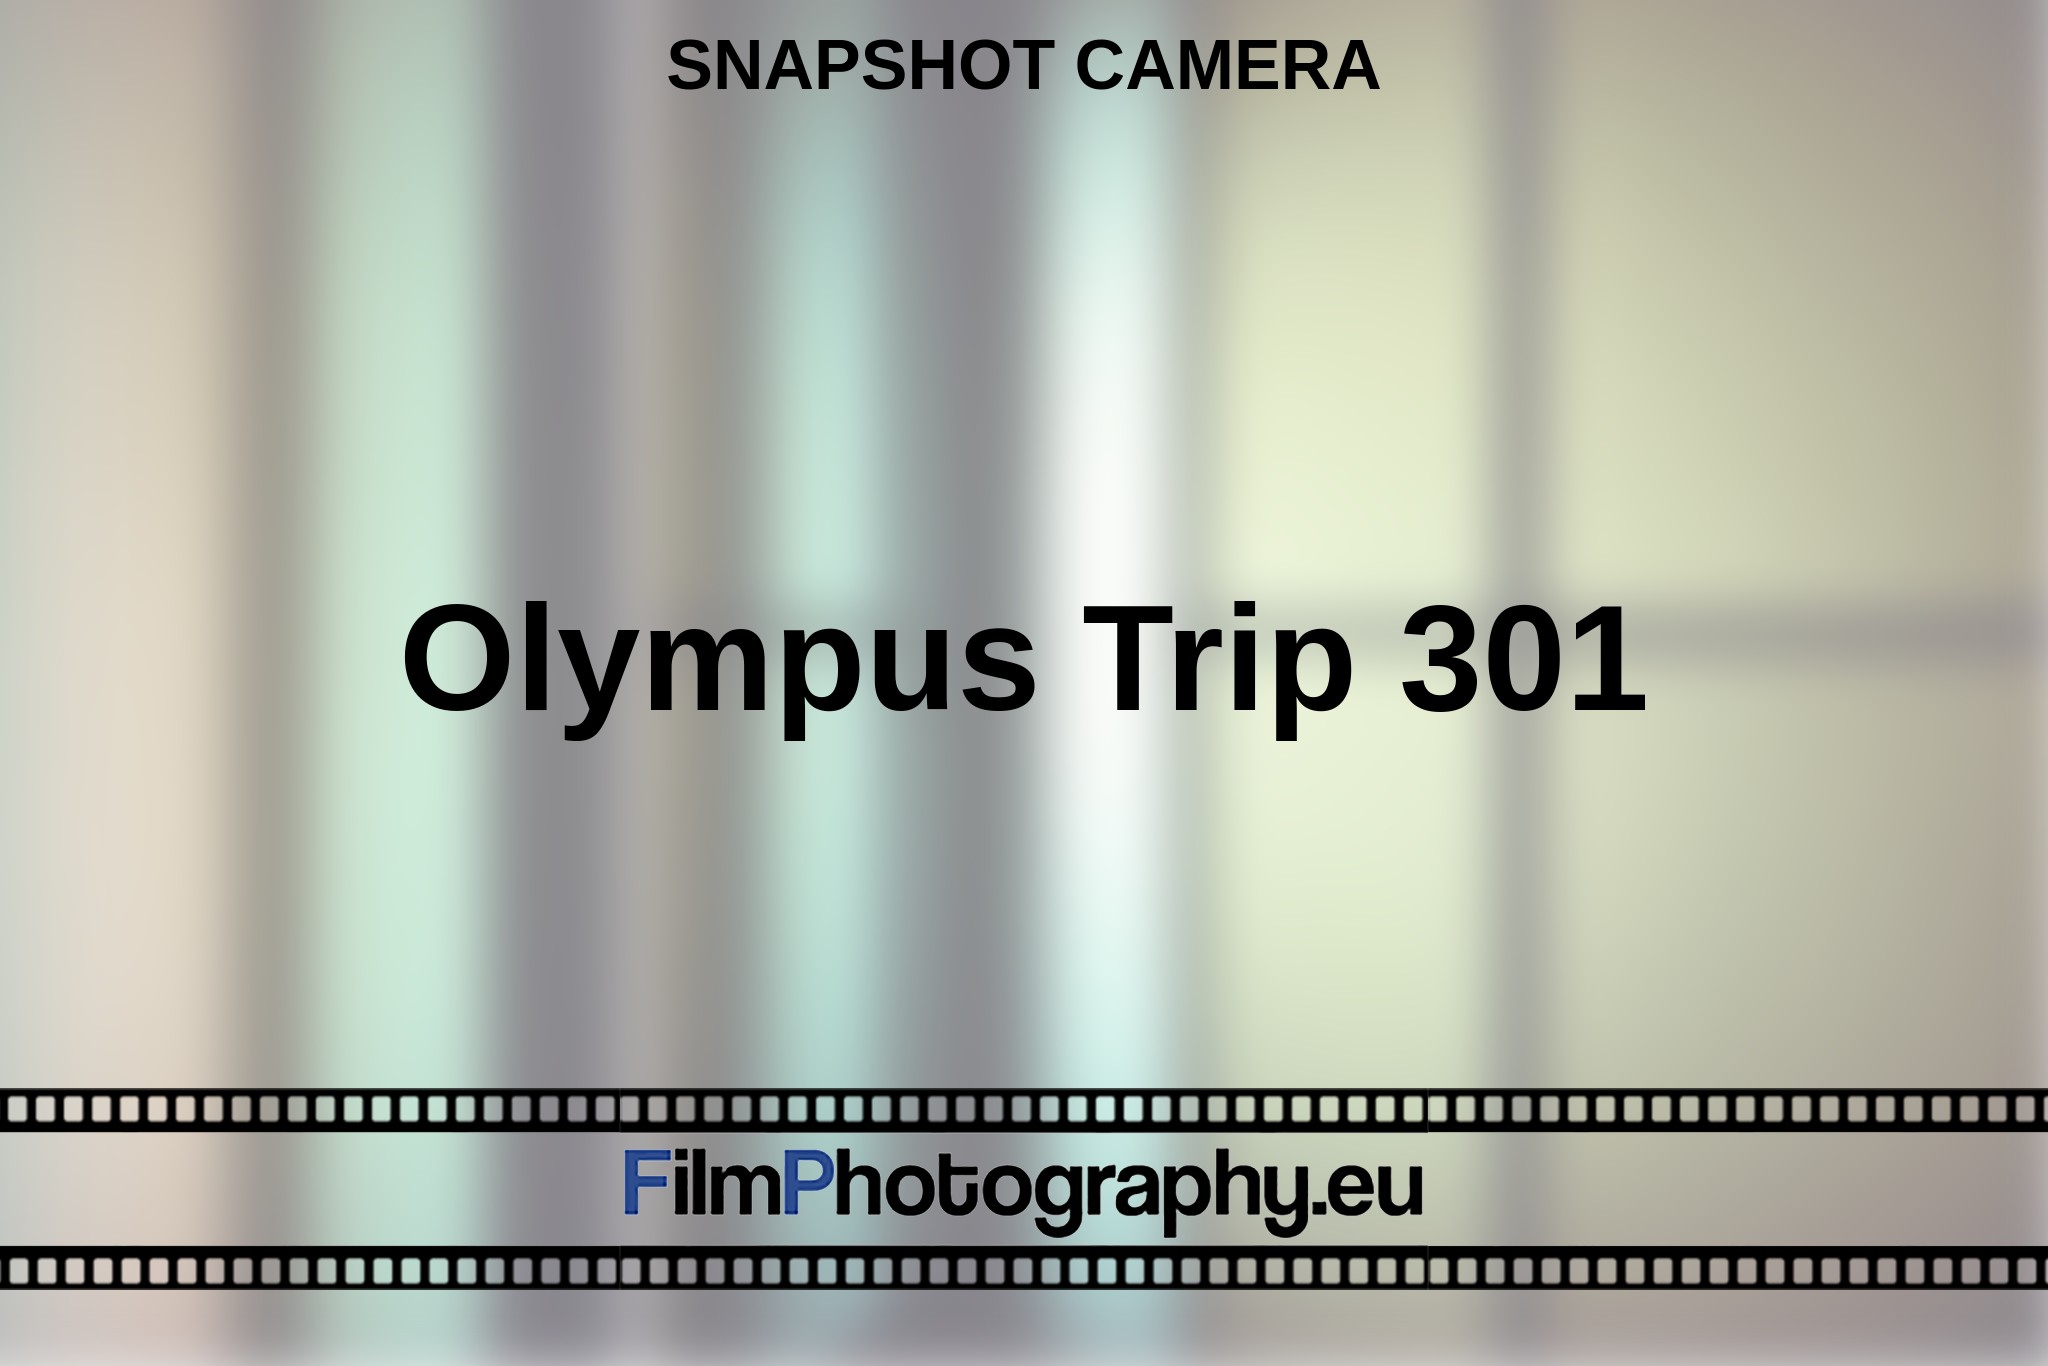 olympus-trip-301-snapshot-camera-en-bnv.jpg